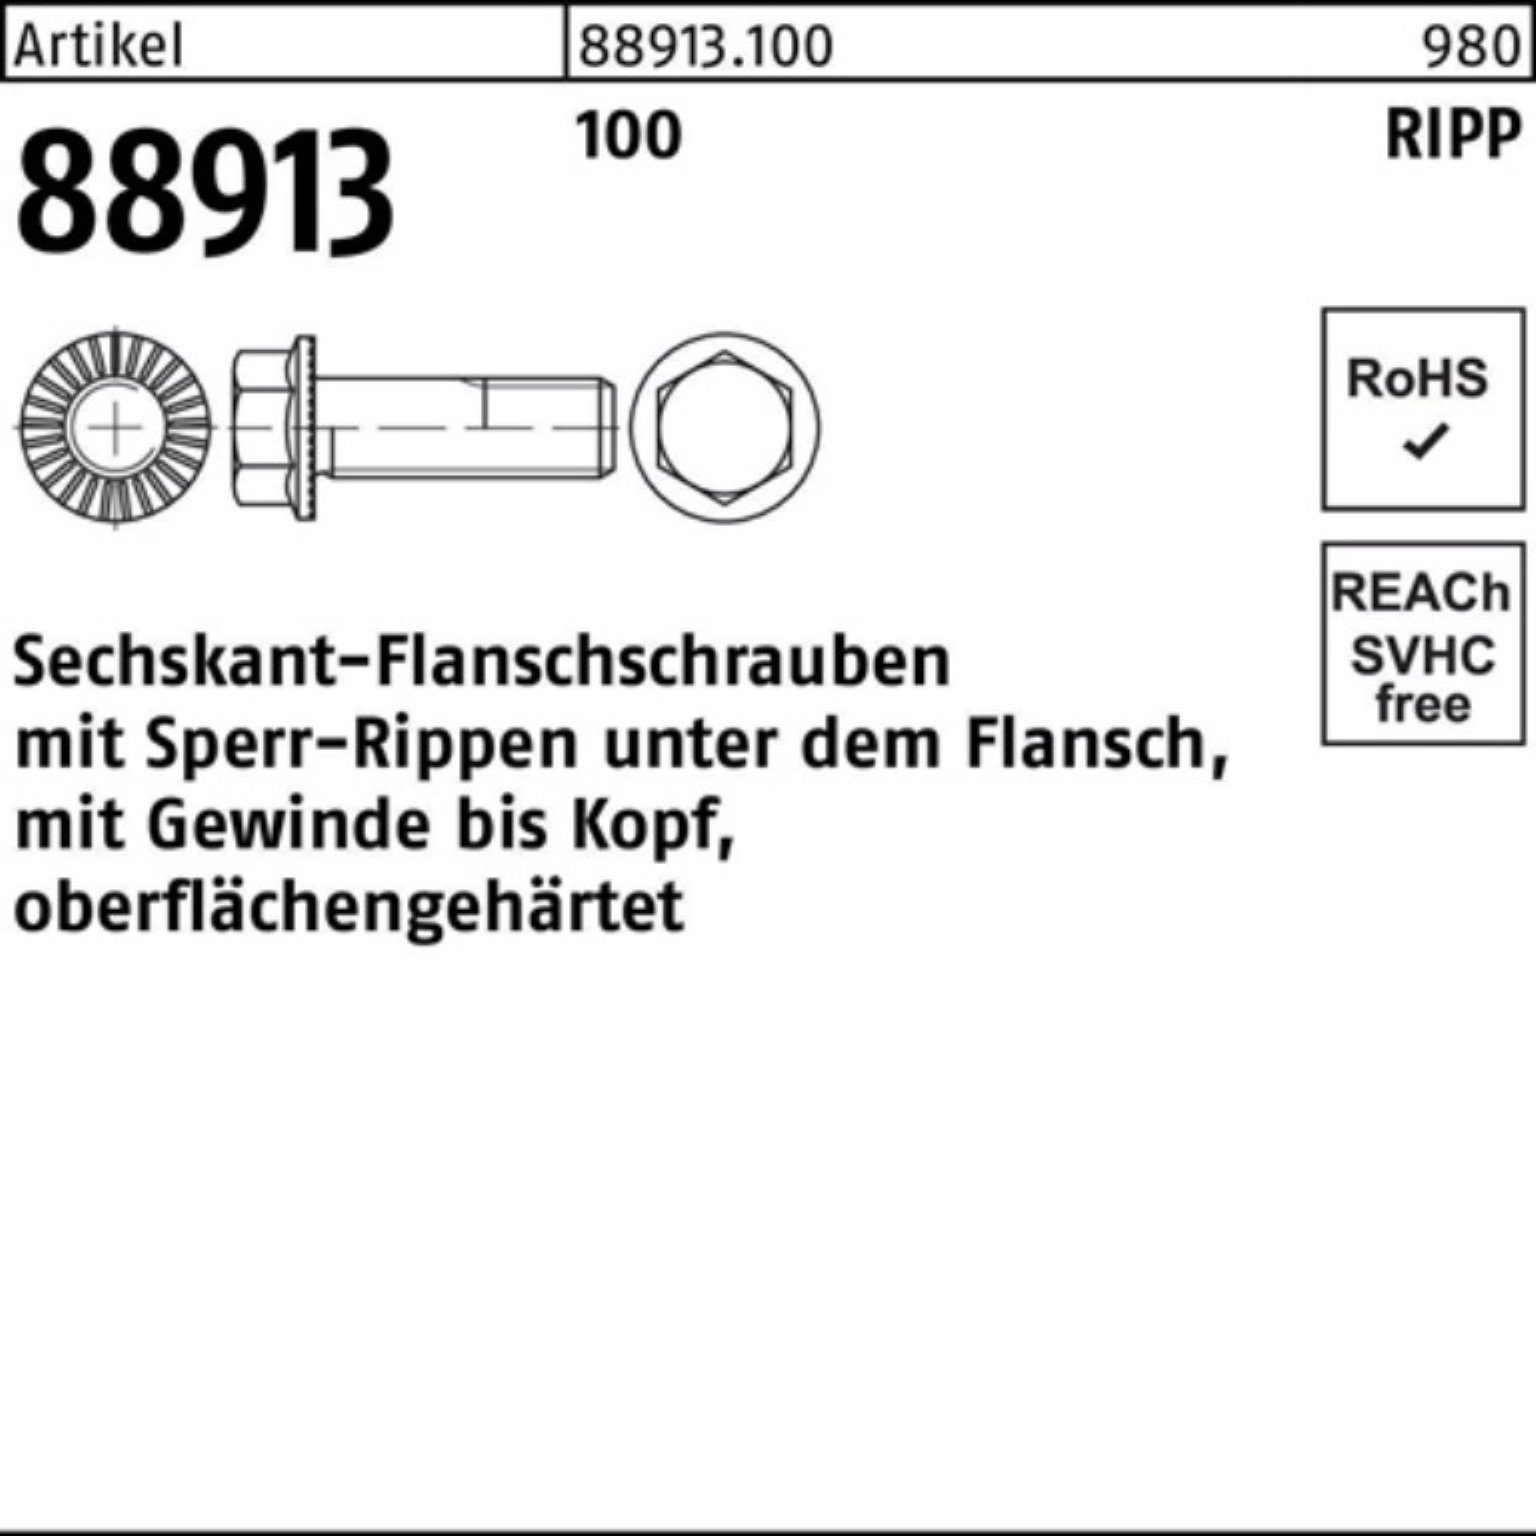 VG 88913 Sperr-Ripp R 500er 5 Reyher 16 Sechskantflanschschraube Schraube 100 Pack M5x